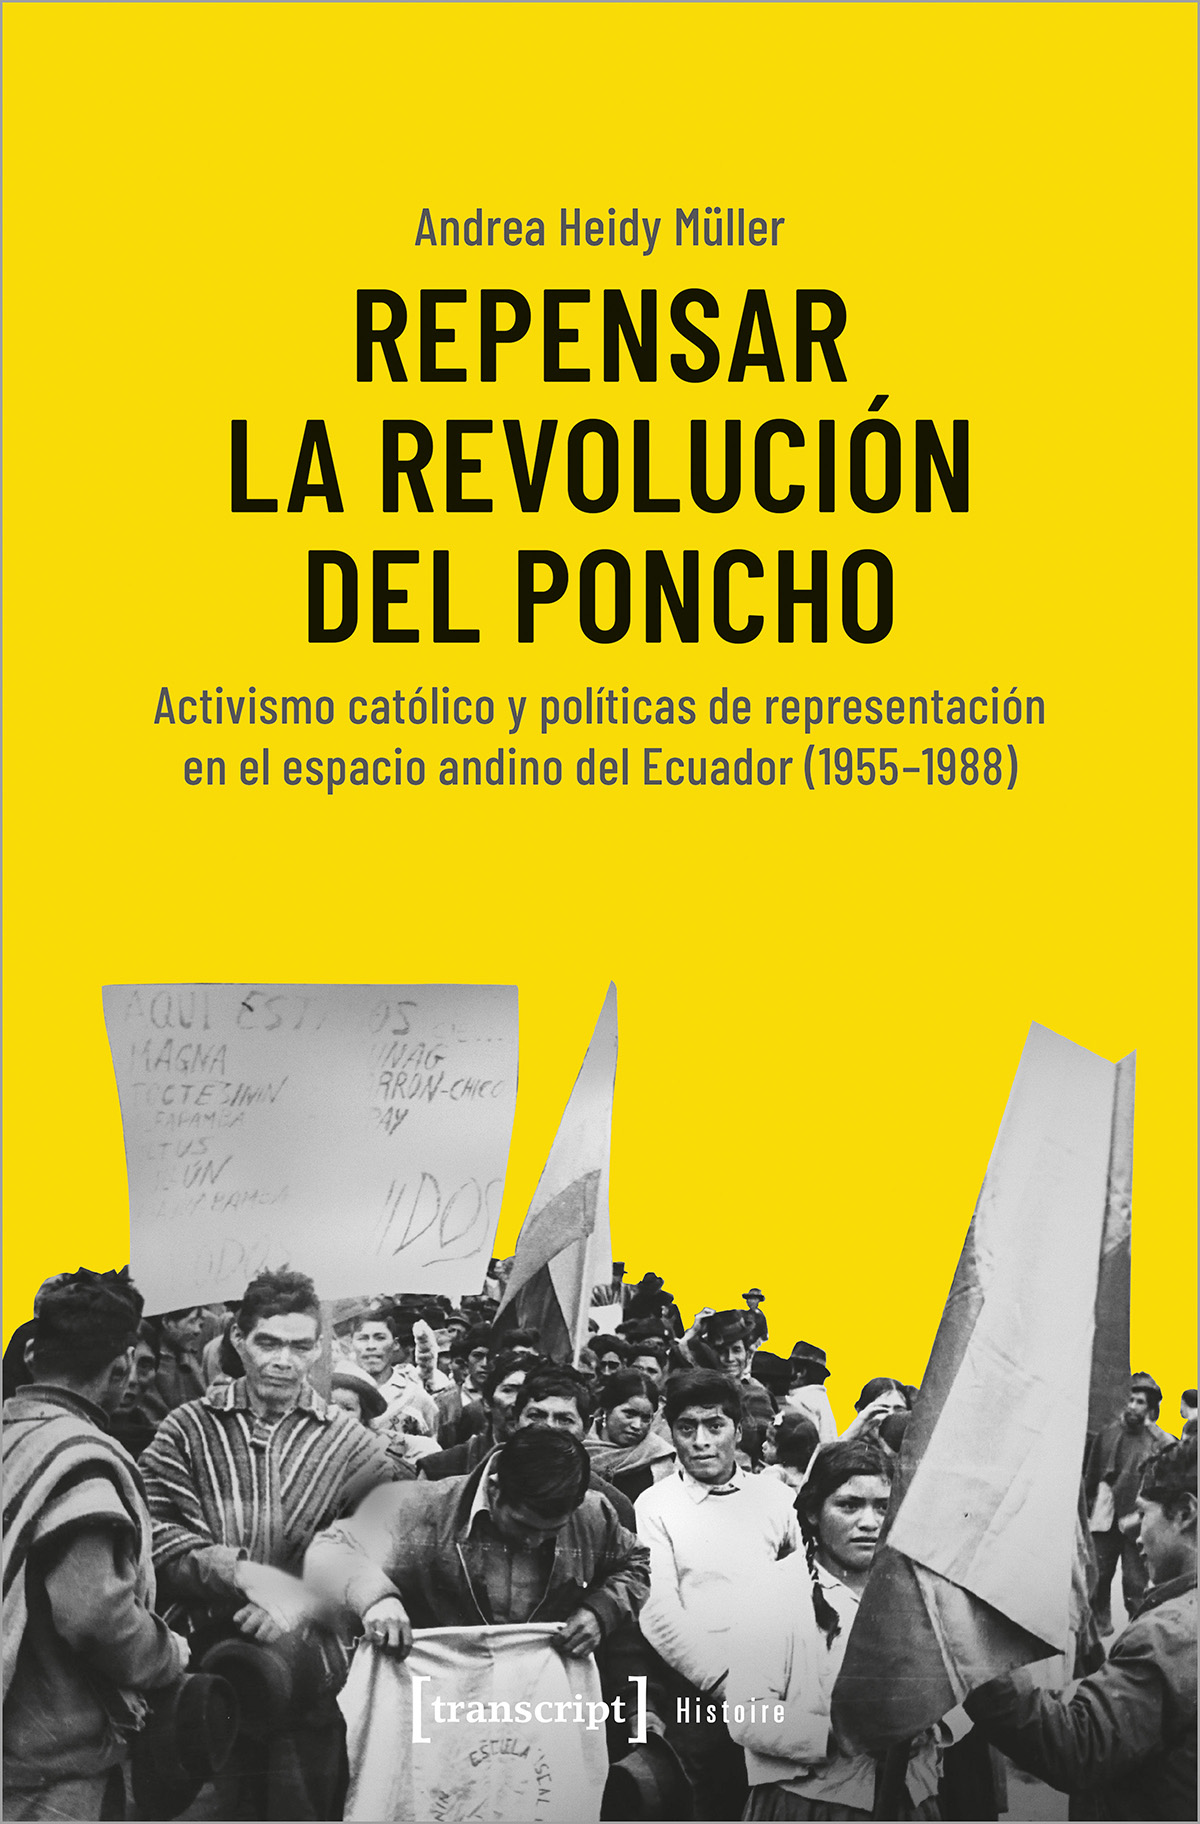 Andrea Heidy Müller | Repensar la Revolución del Poncho